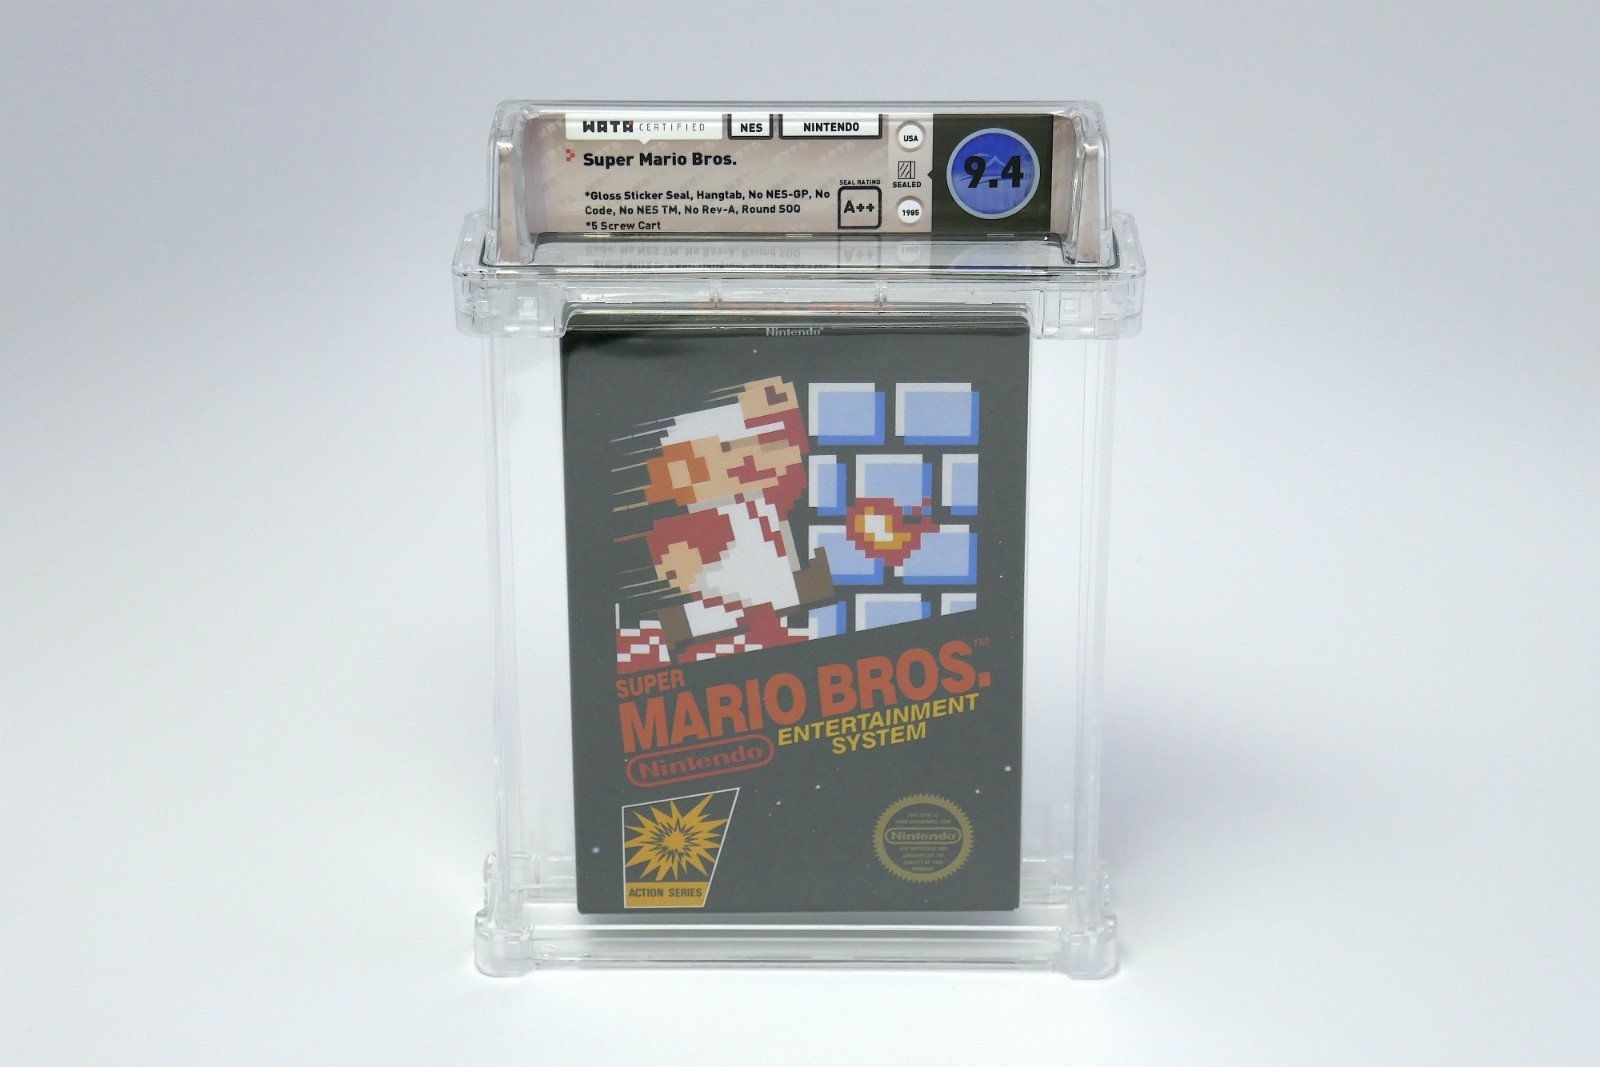 Нераспечатанный картридж 1985 года выпуска с игрой Super Mario продан на аукционе за рекордную сумму